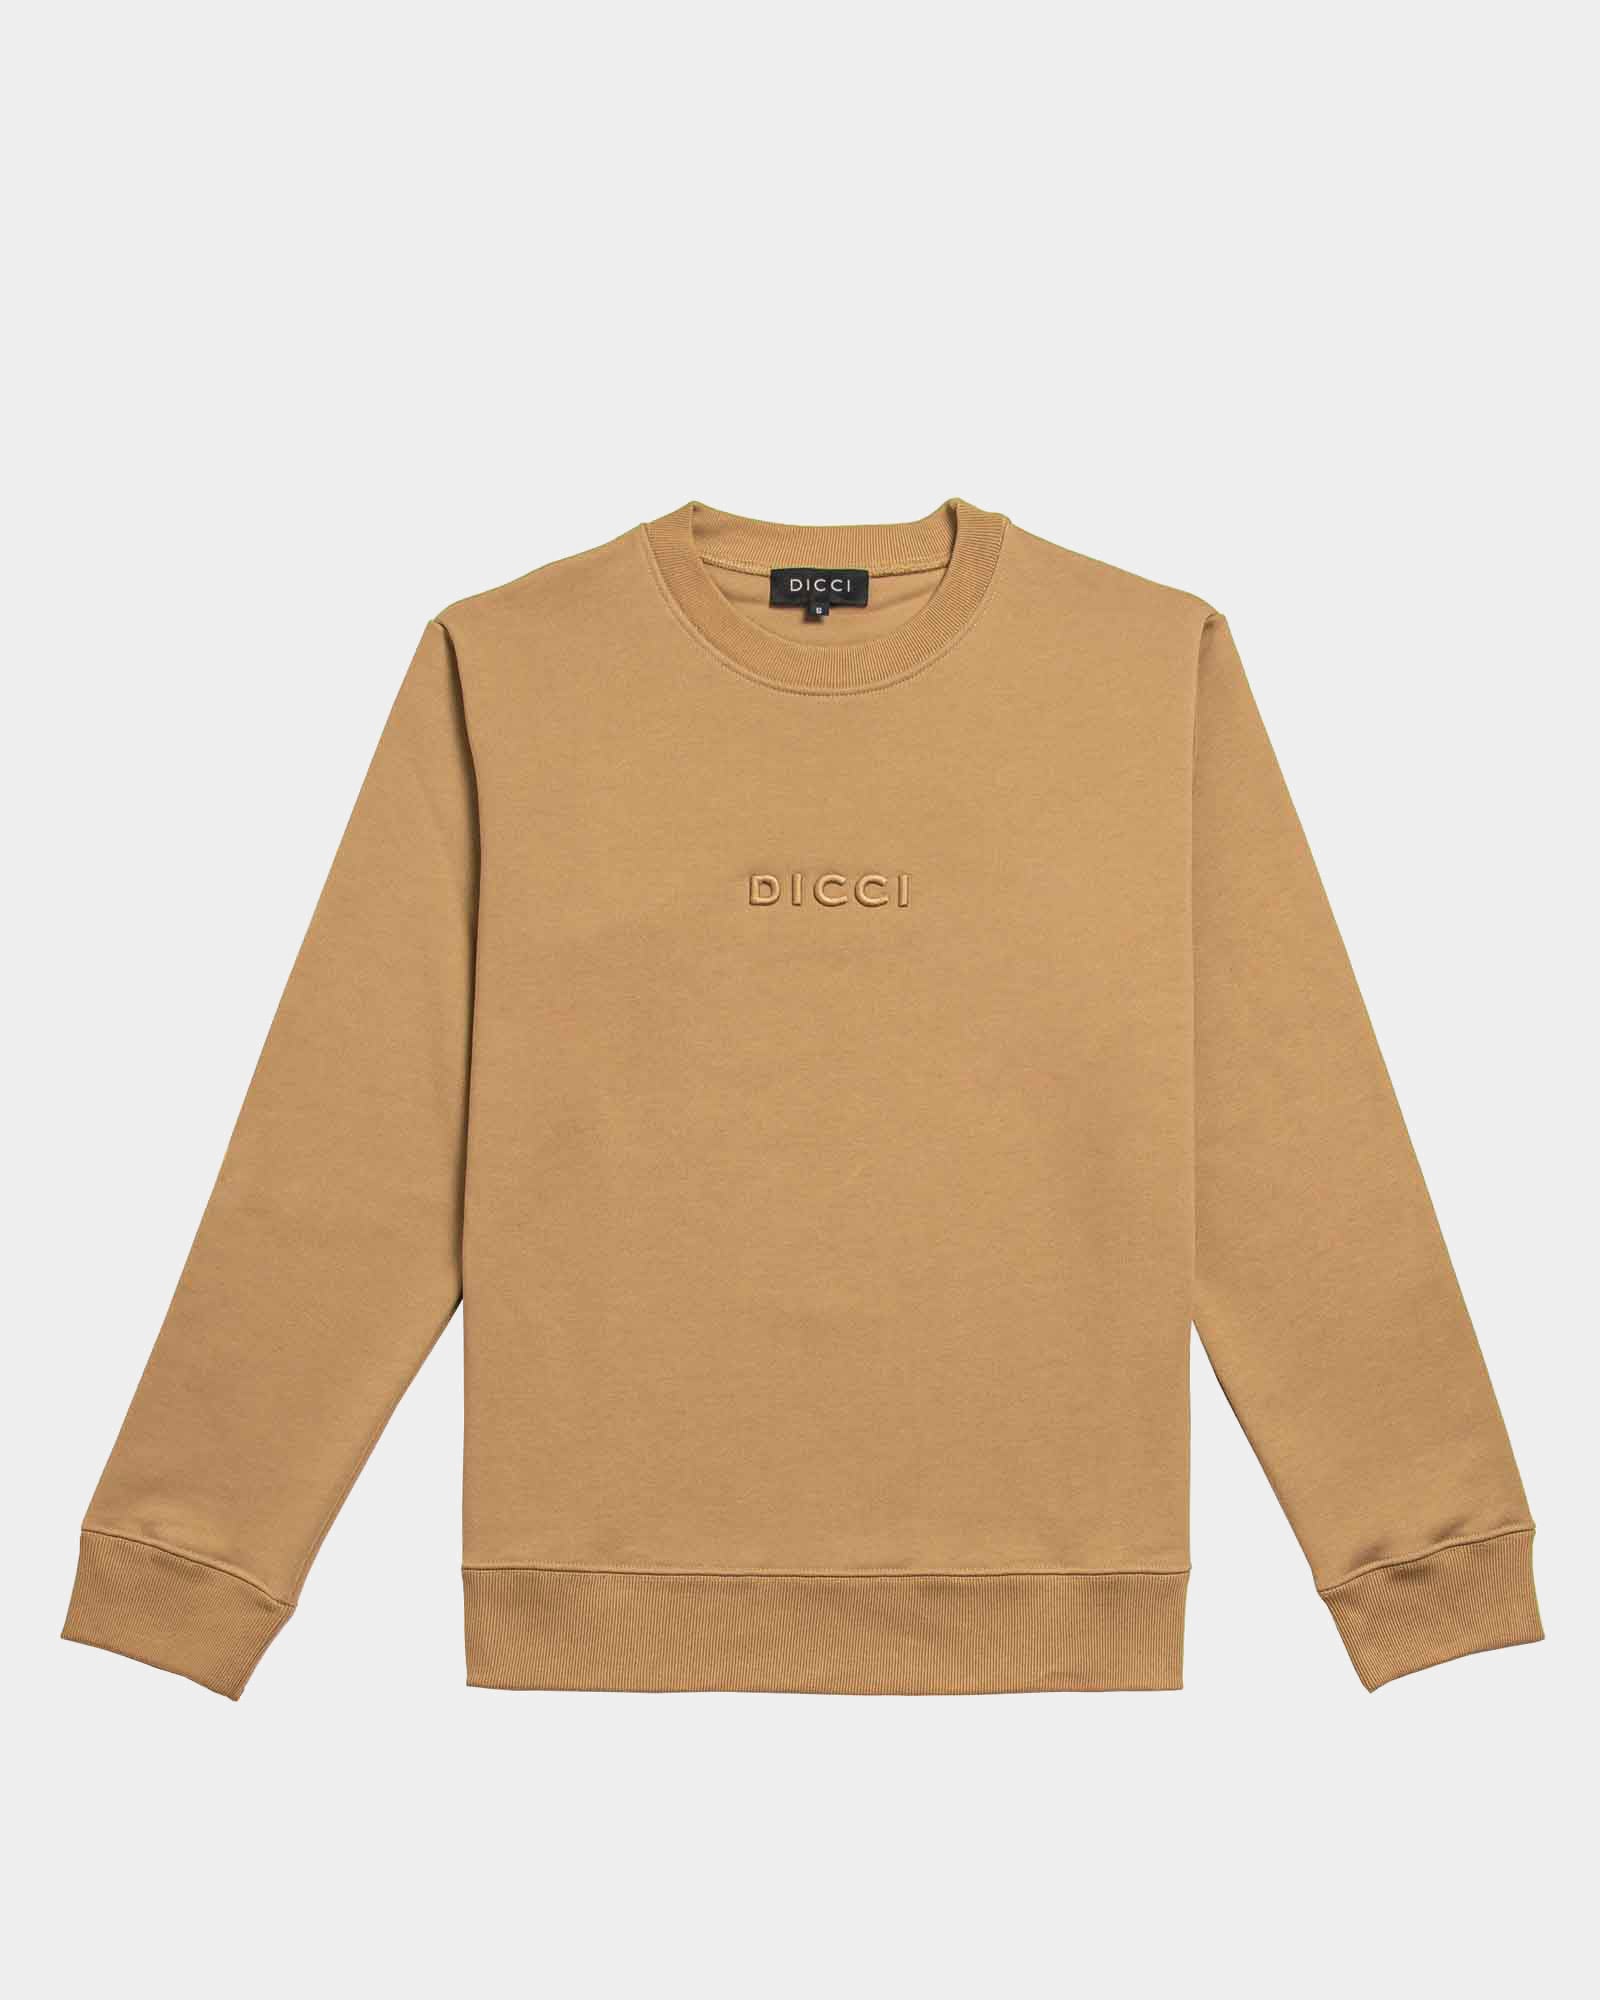 Camel Organic Cotton Hooded Sweatshirt — Original Favorites